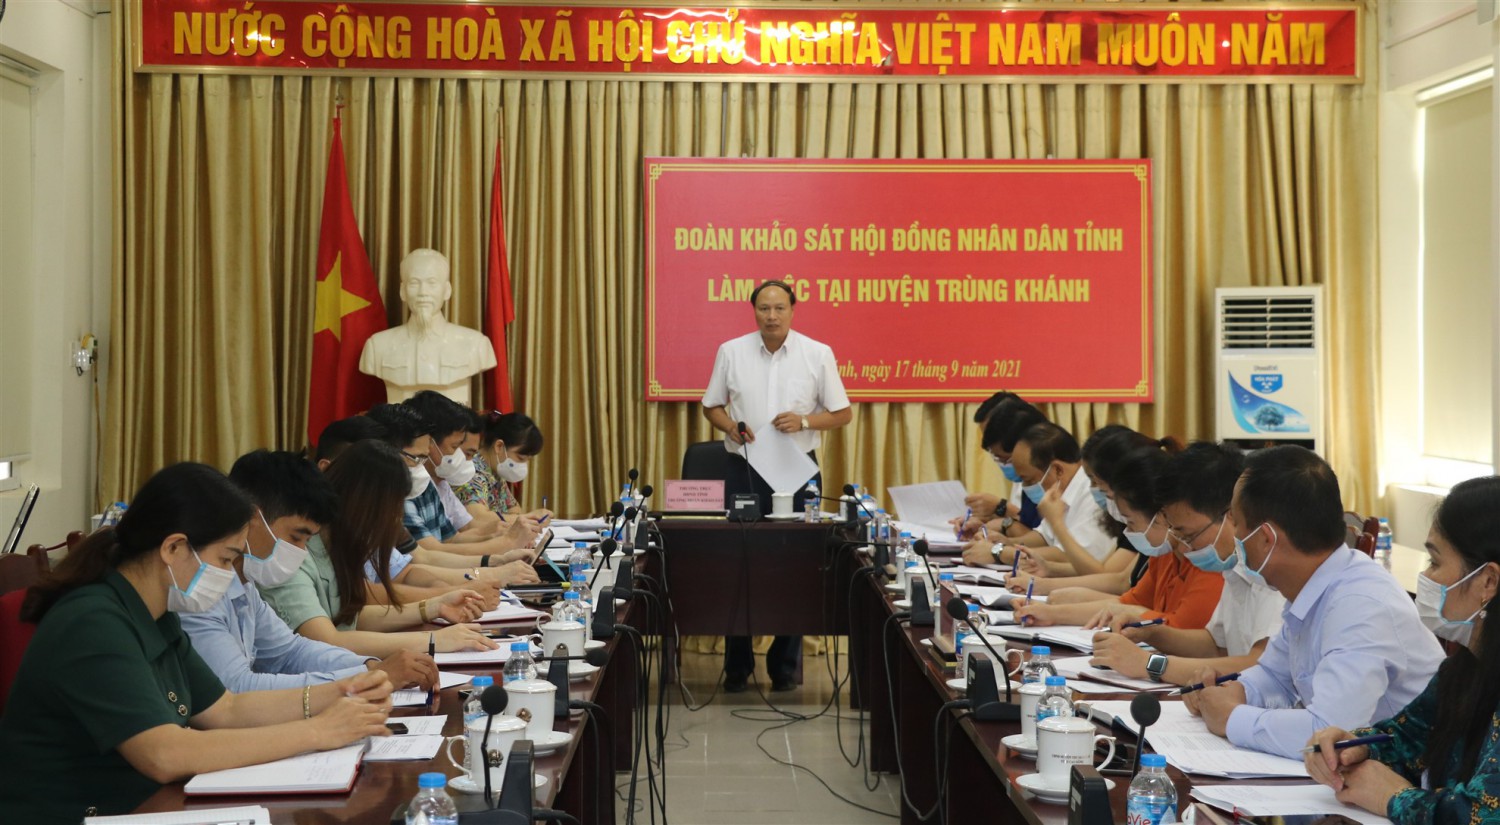 Phó chủ tịch HĐND tỉnh - Hoàng Văn Thạch phát biểu tại buổi làm việc với UBND huyện Trùng Khánh